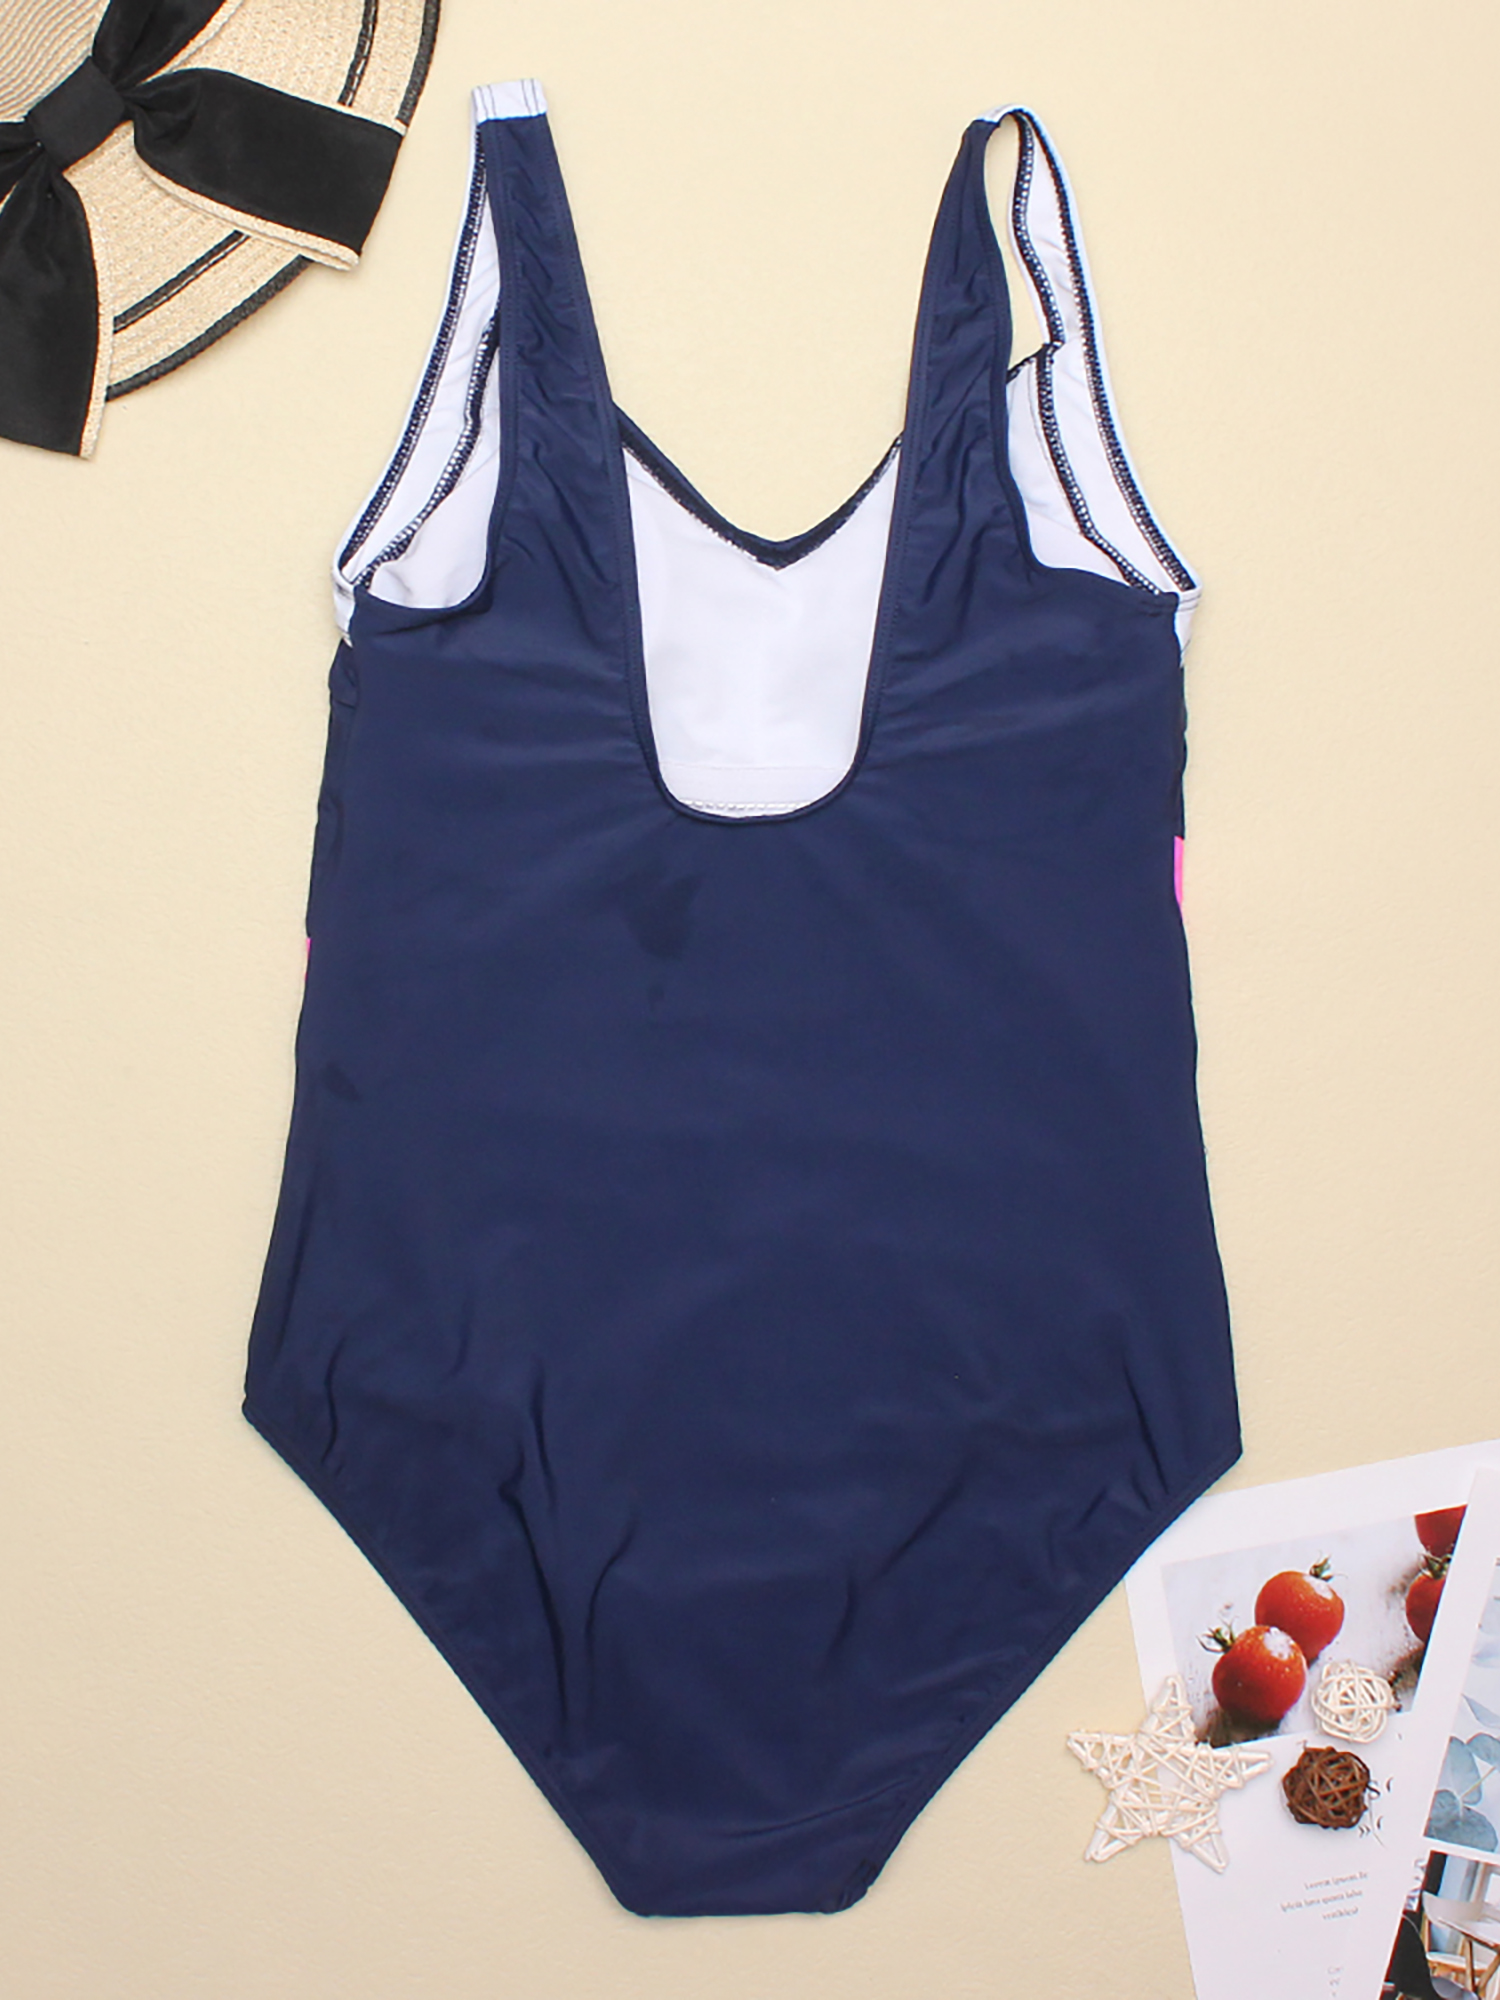 Colorful Tummy Control Swimsuit, Scoop Neck One-piece Bathing Suit, Stripe  & Polka Dot Design, Women's Shapewear & Swimwear